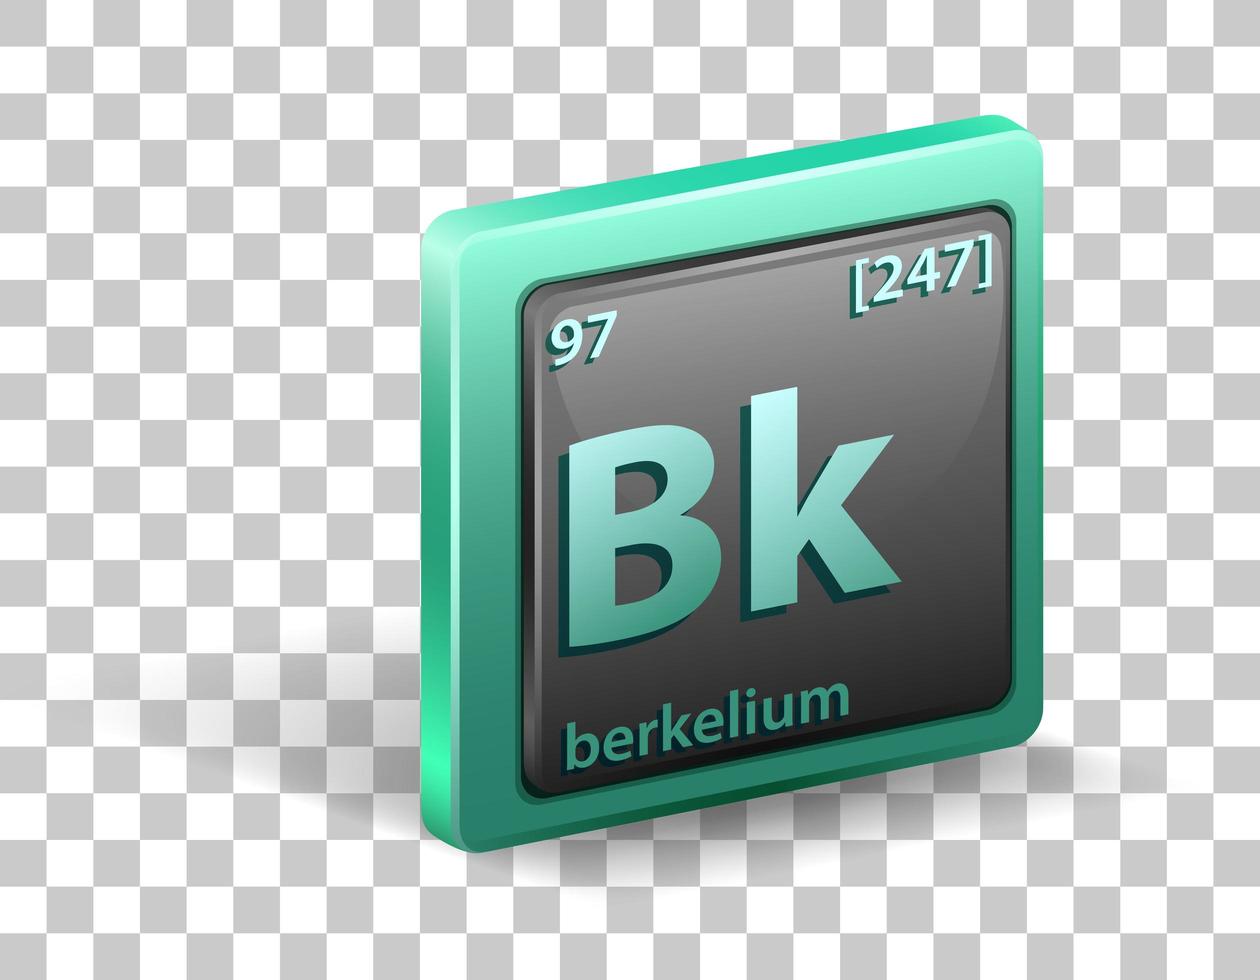 elemento químico berkelio. símbolo químico con número atómico y masa atómica. vector